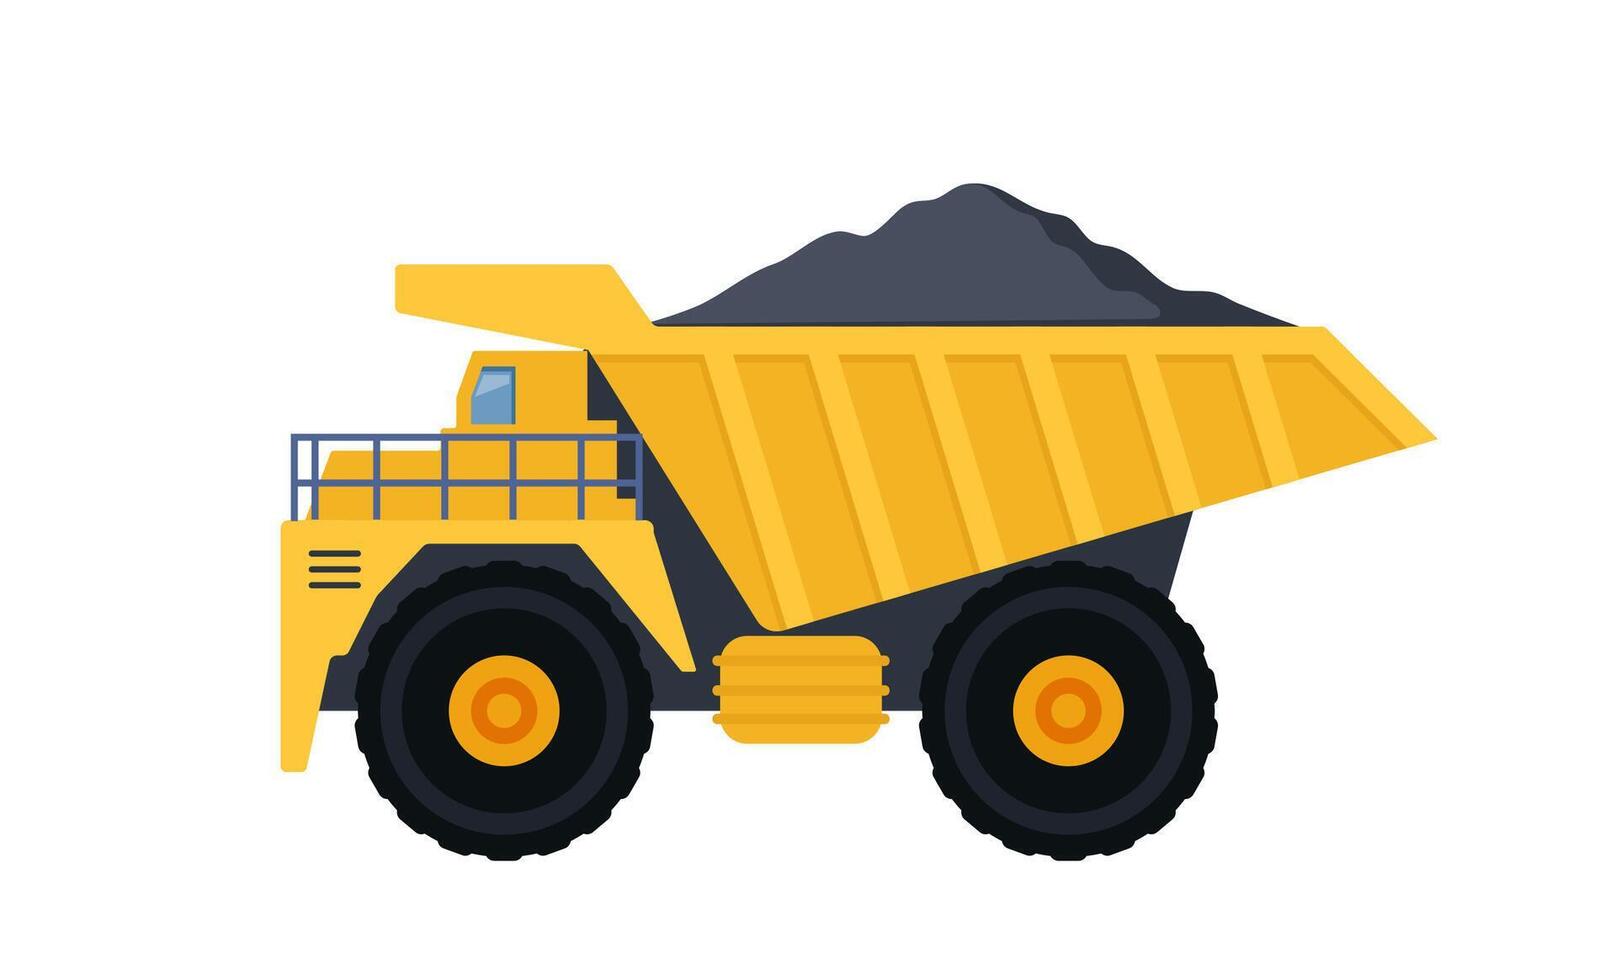 grand carrière déverser camion. équipement pour le haute exploitation minière industrie. côté voir. charbon exploitation minière processus et transport. vecteur illustration.